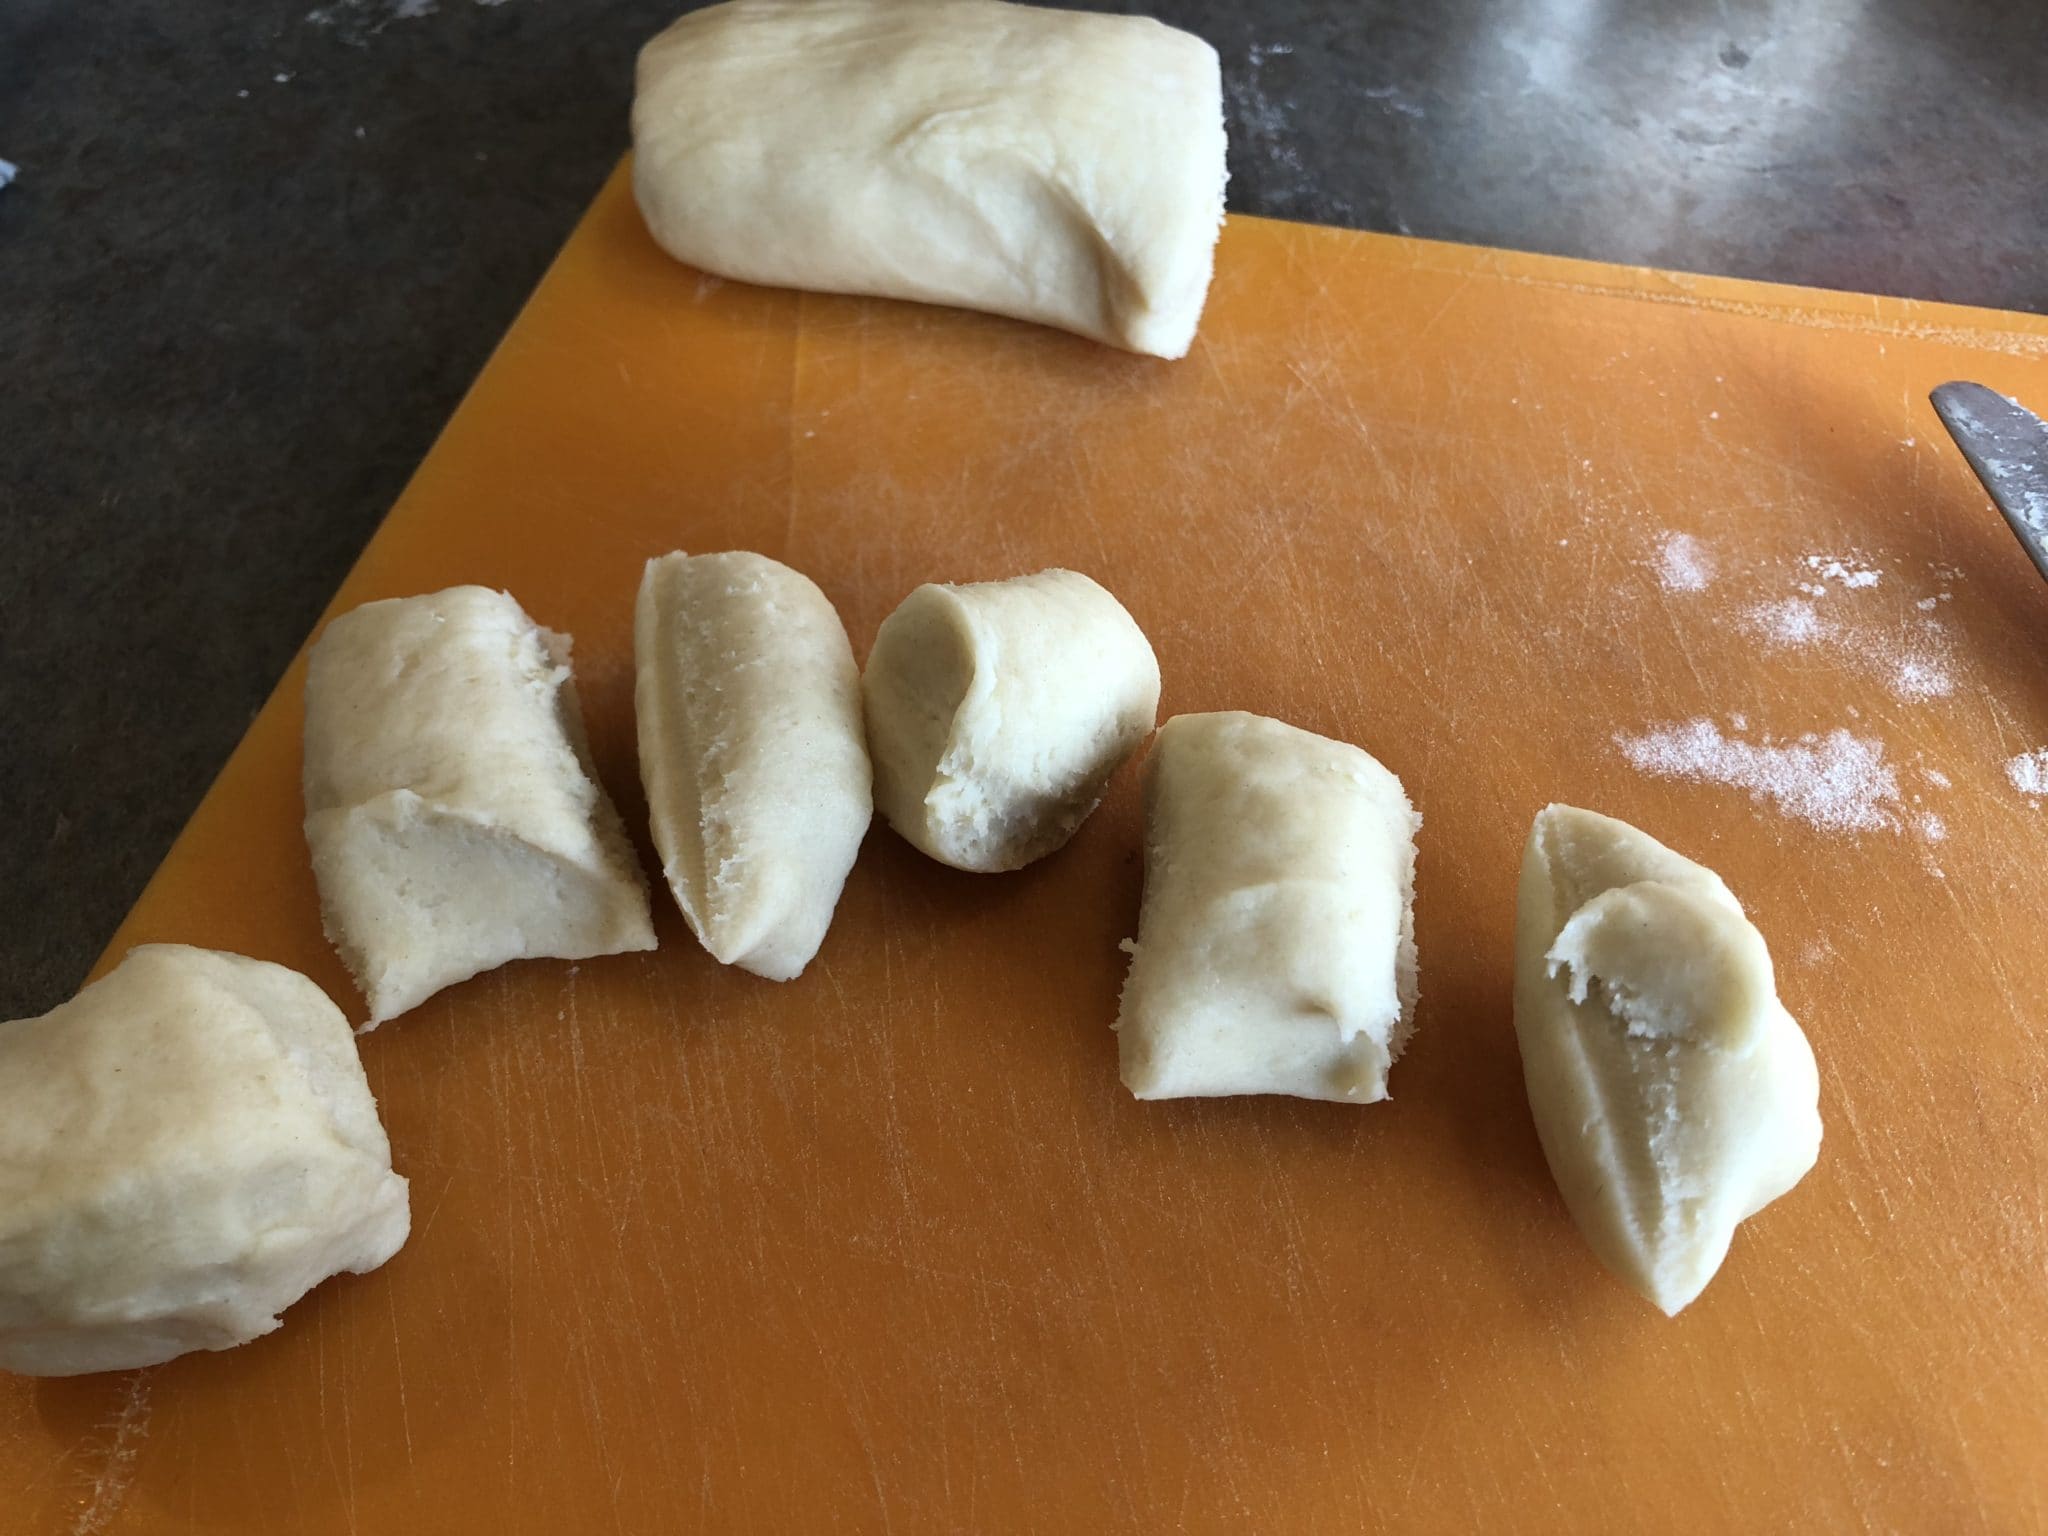 cutting up walnut tassie pieces